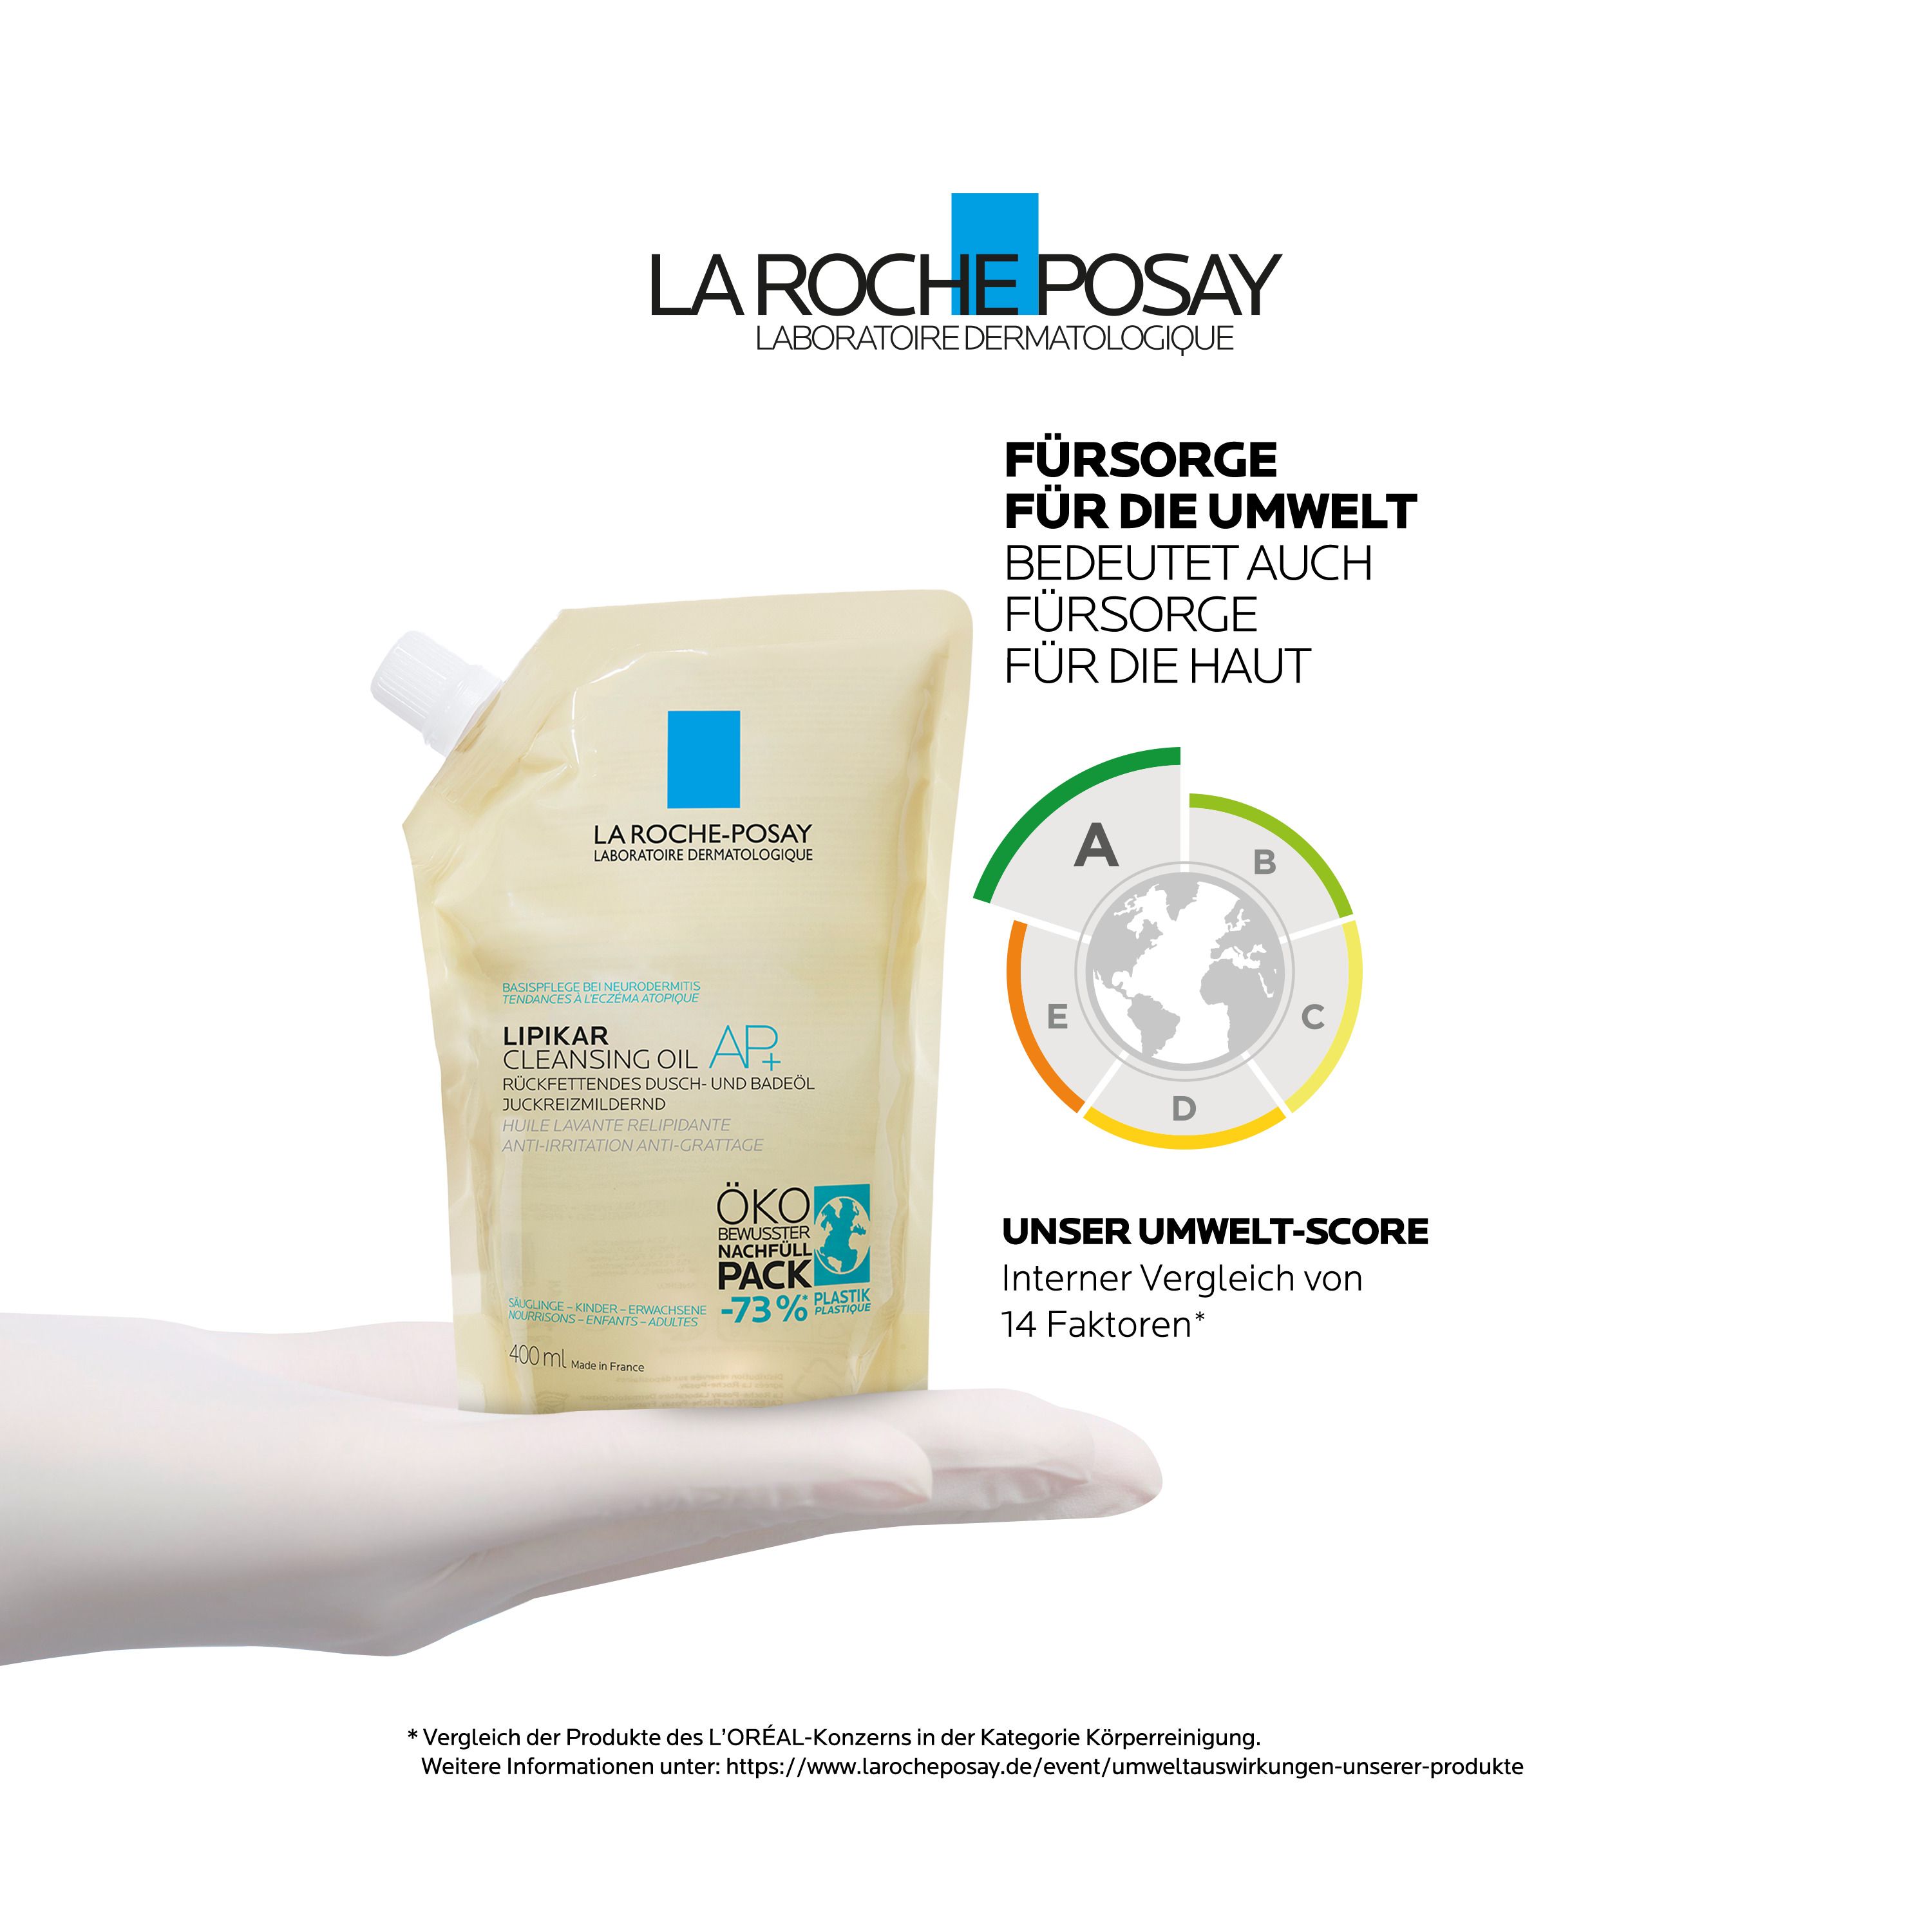  La Roche Posay Lipikar Dusch- und Badeöl AP+ Rückfettendes Dusch- und Badeöl im Nachfüllpack für juckende, trockene und empfindliche Haut